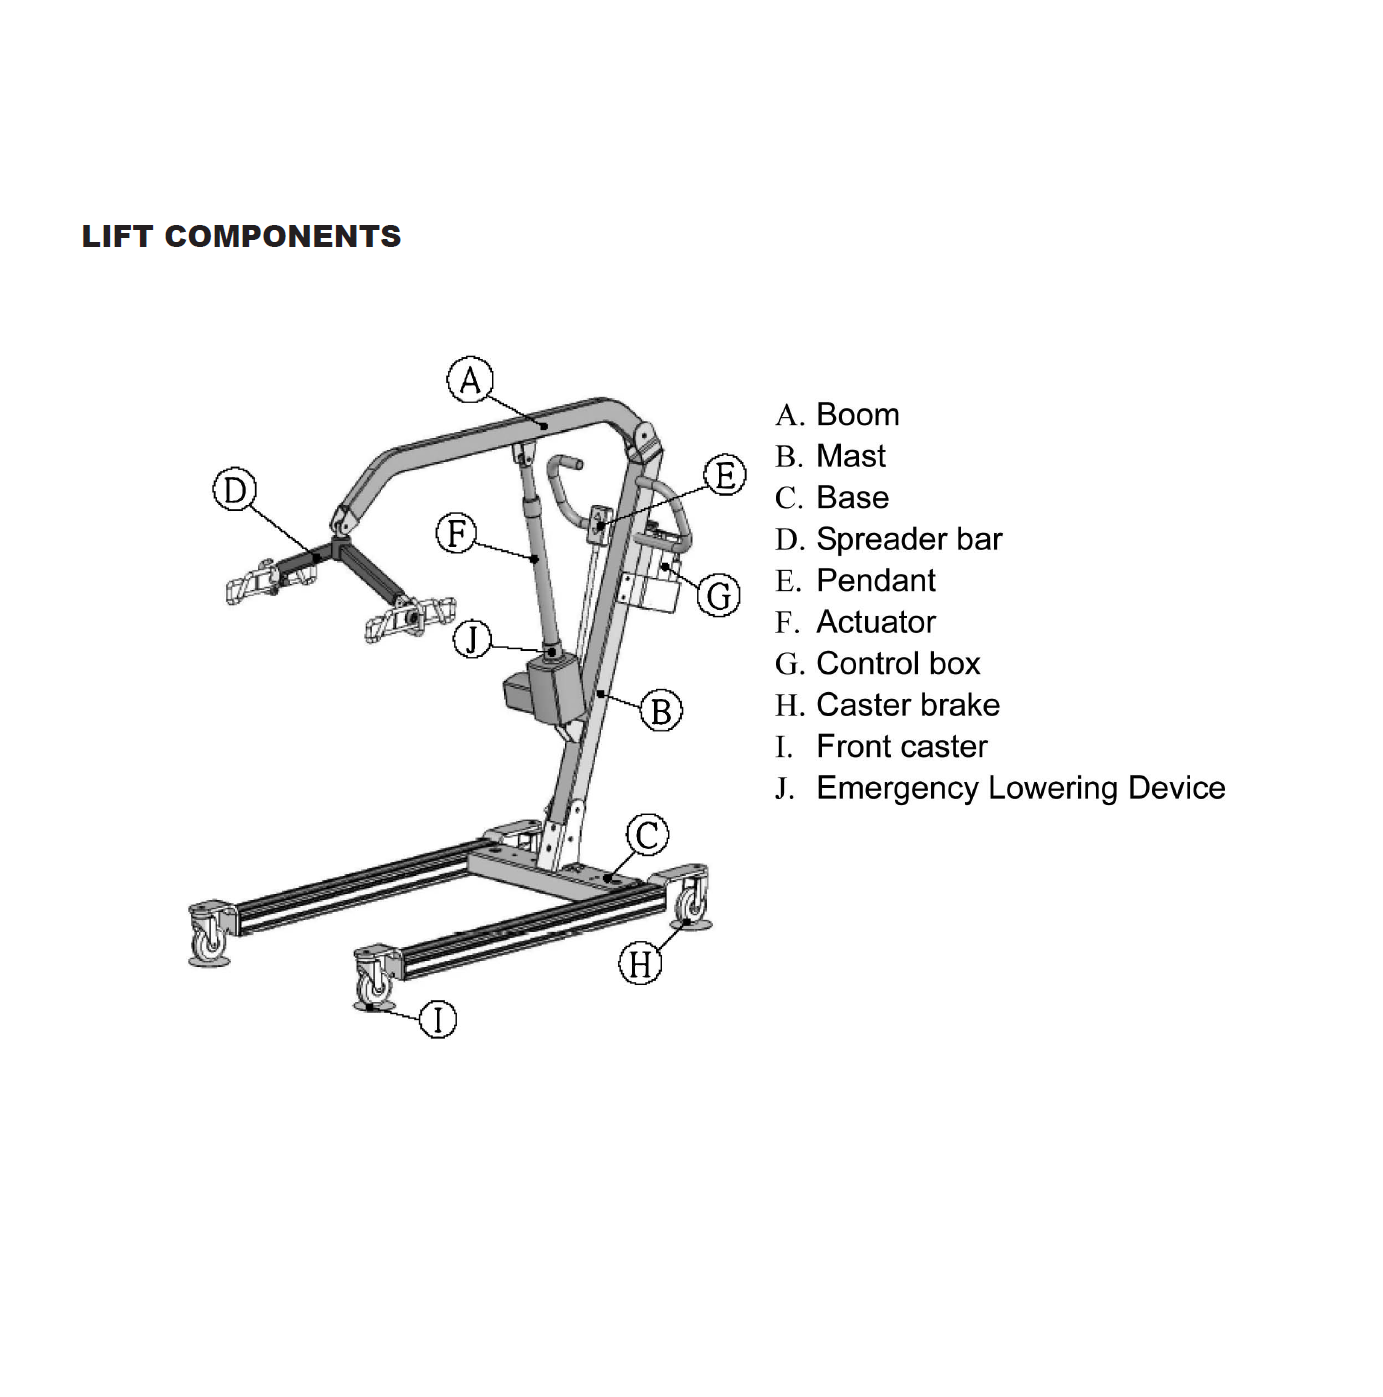 Lumex Patient Lift Components